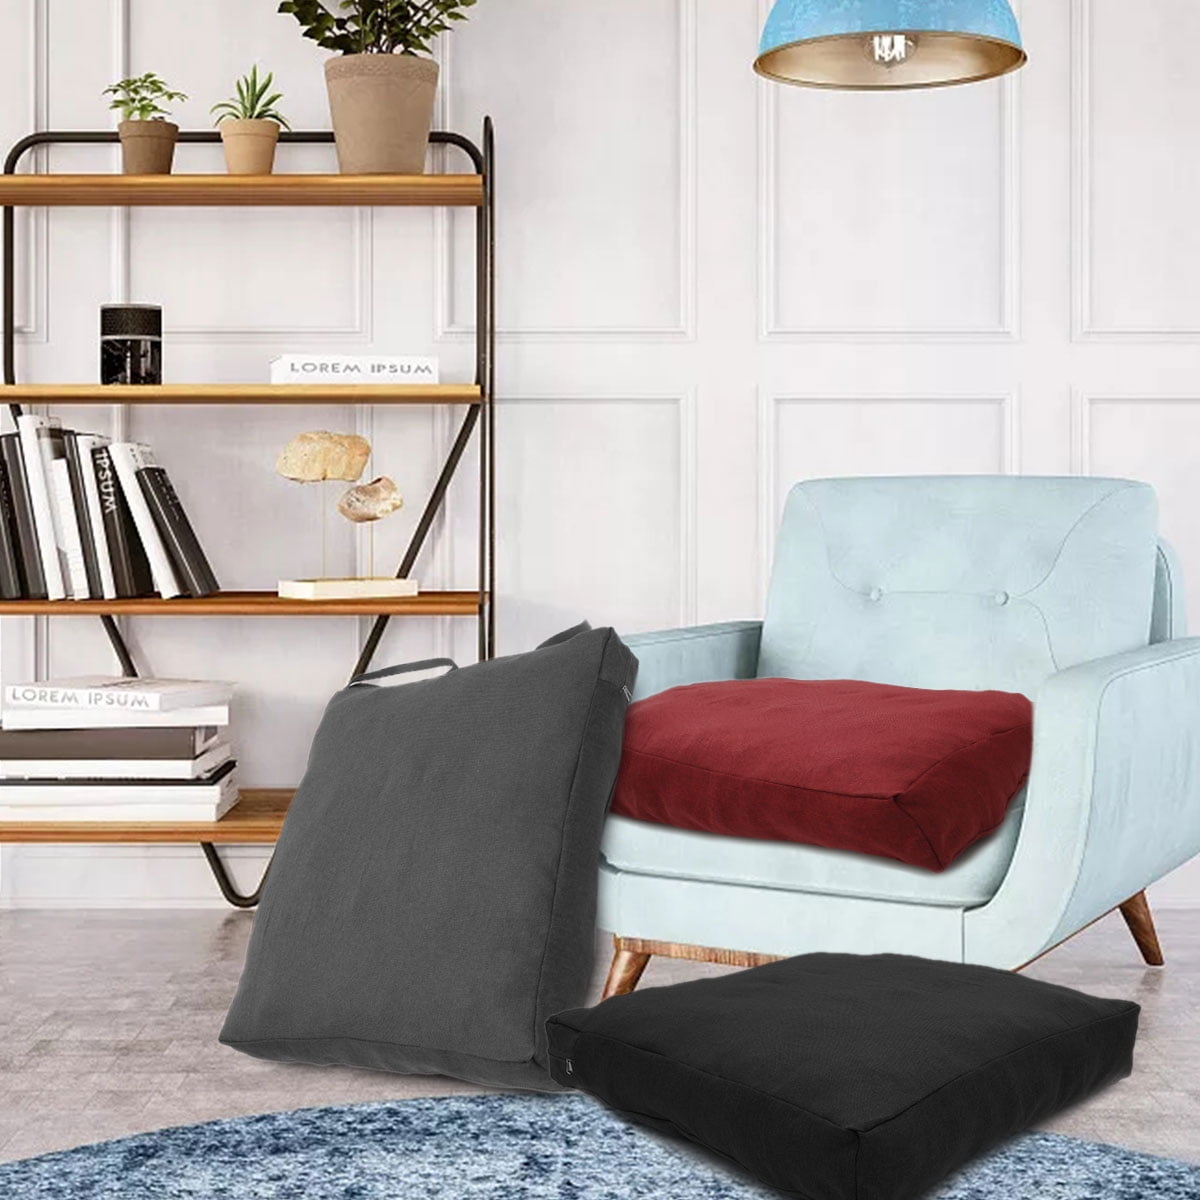 1pcs Waterproof Outdoor/Indoor Furniture Cushions Replacement Deep